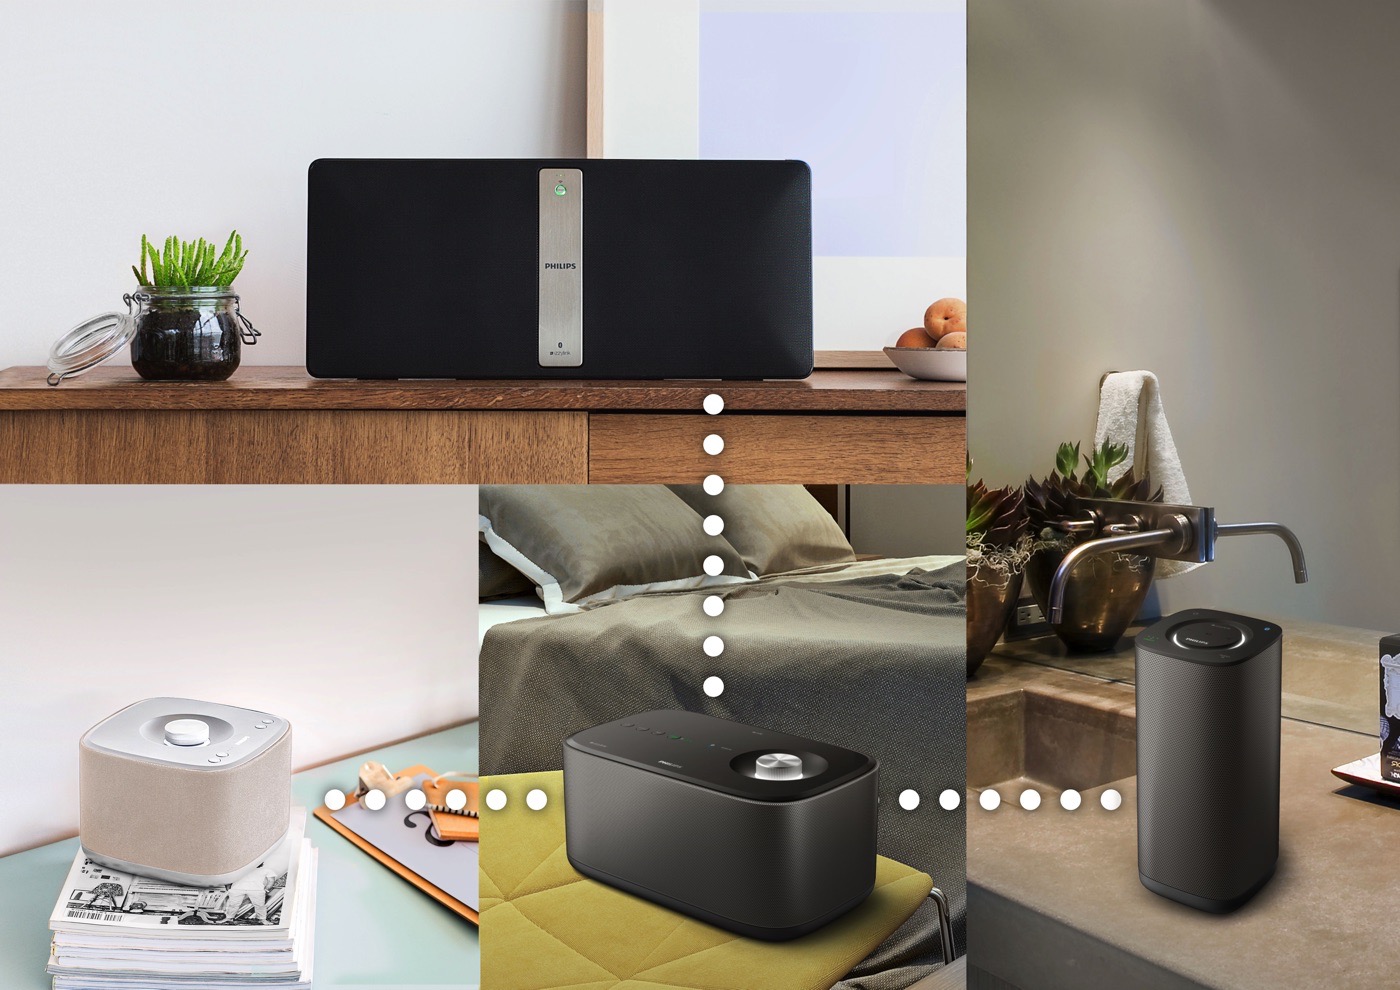 فیلیپس با سری جدید سیستم های صوتی izzy به مصاف کمپانی Sonos می رود